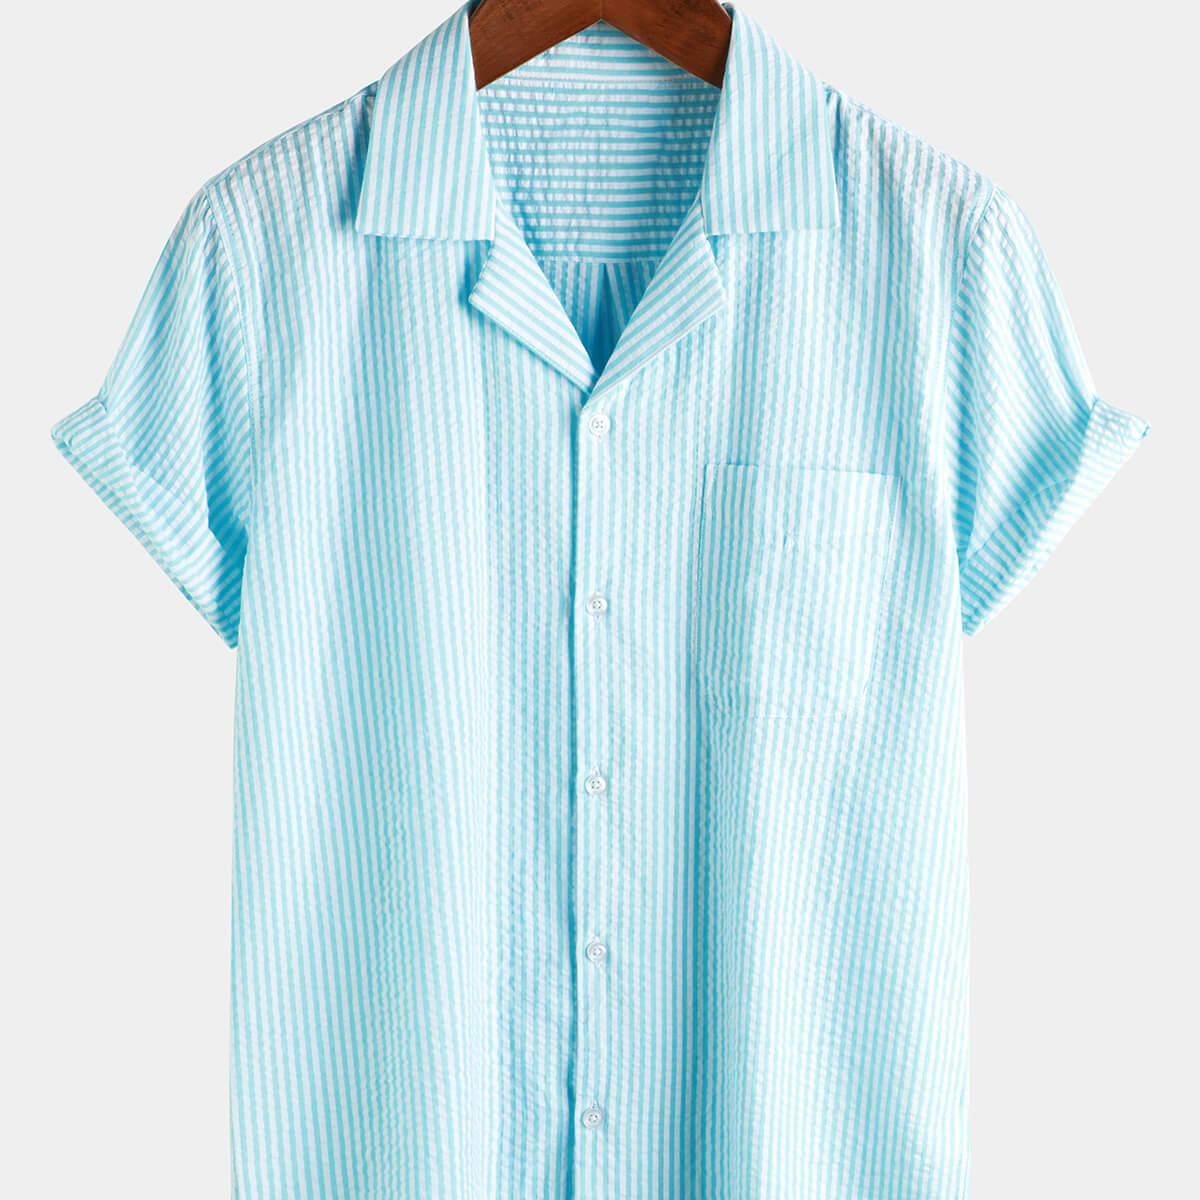 Camisa de manga corta con bolsillo de verano 100% algodón informal con botones para hombre